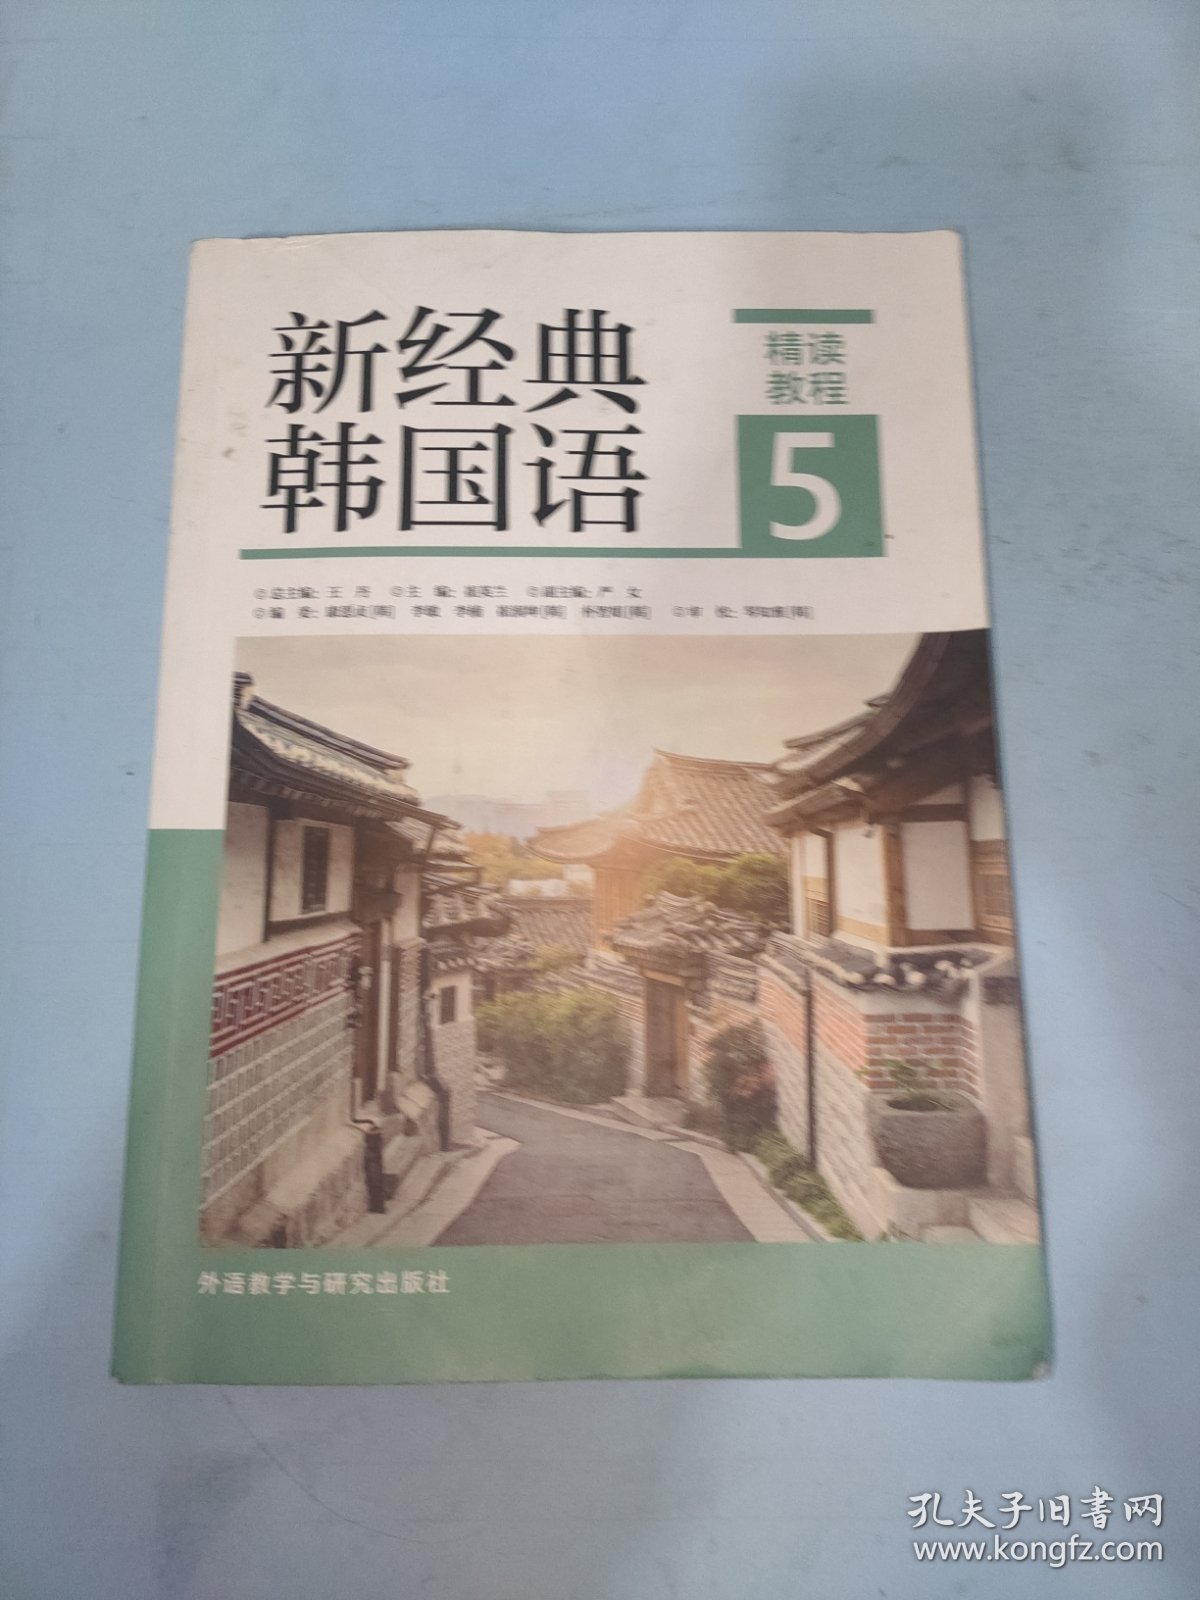 新经典韩国语(精读教程)(5)